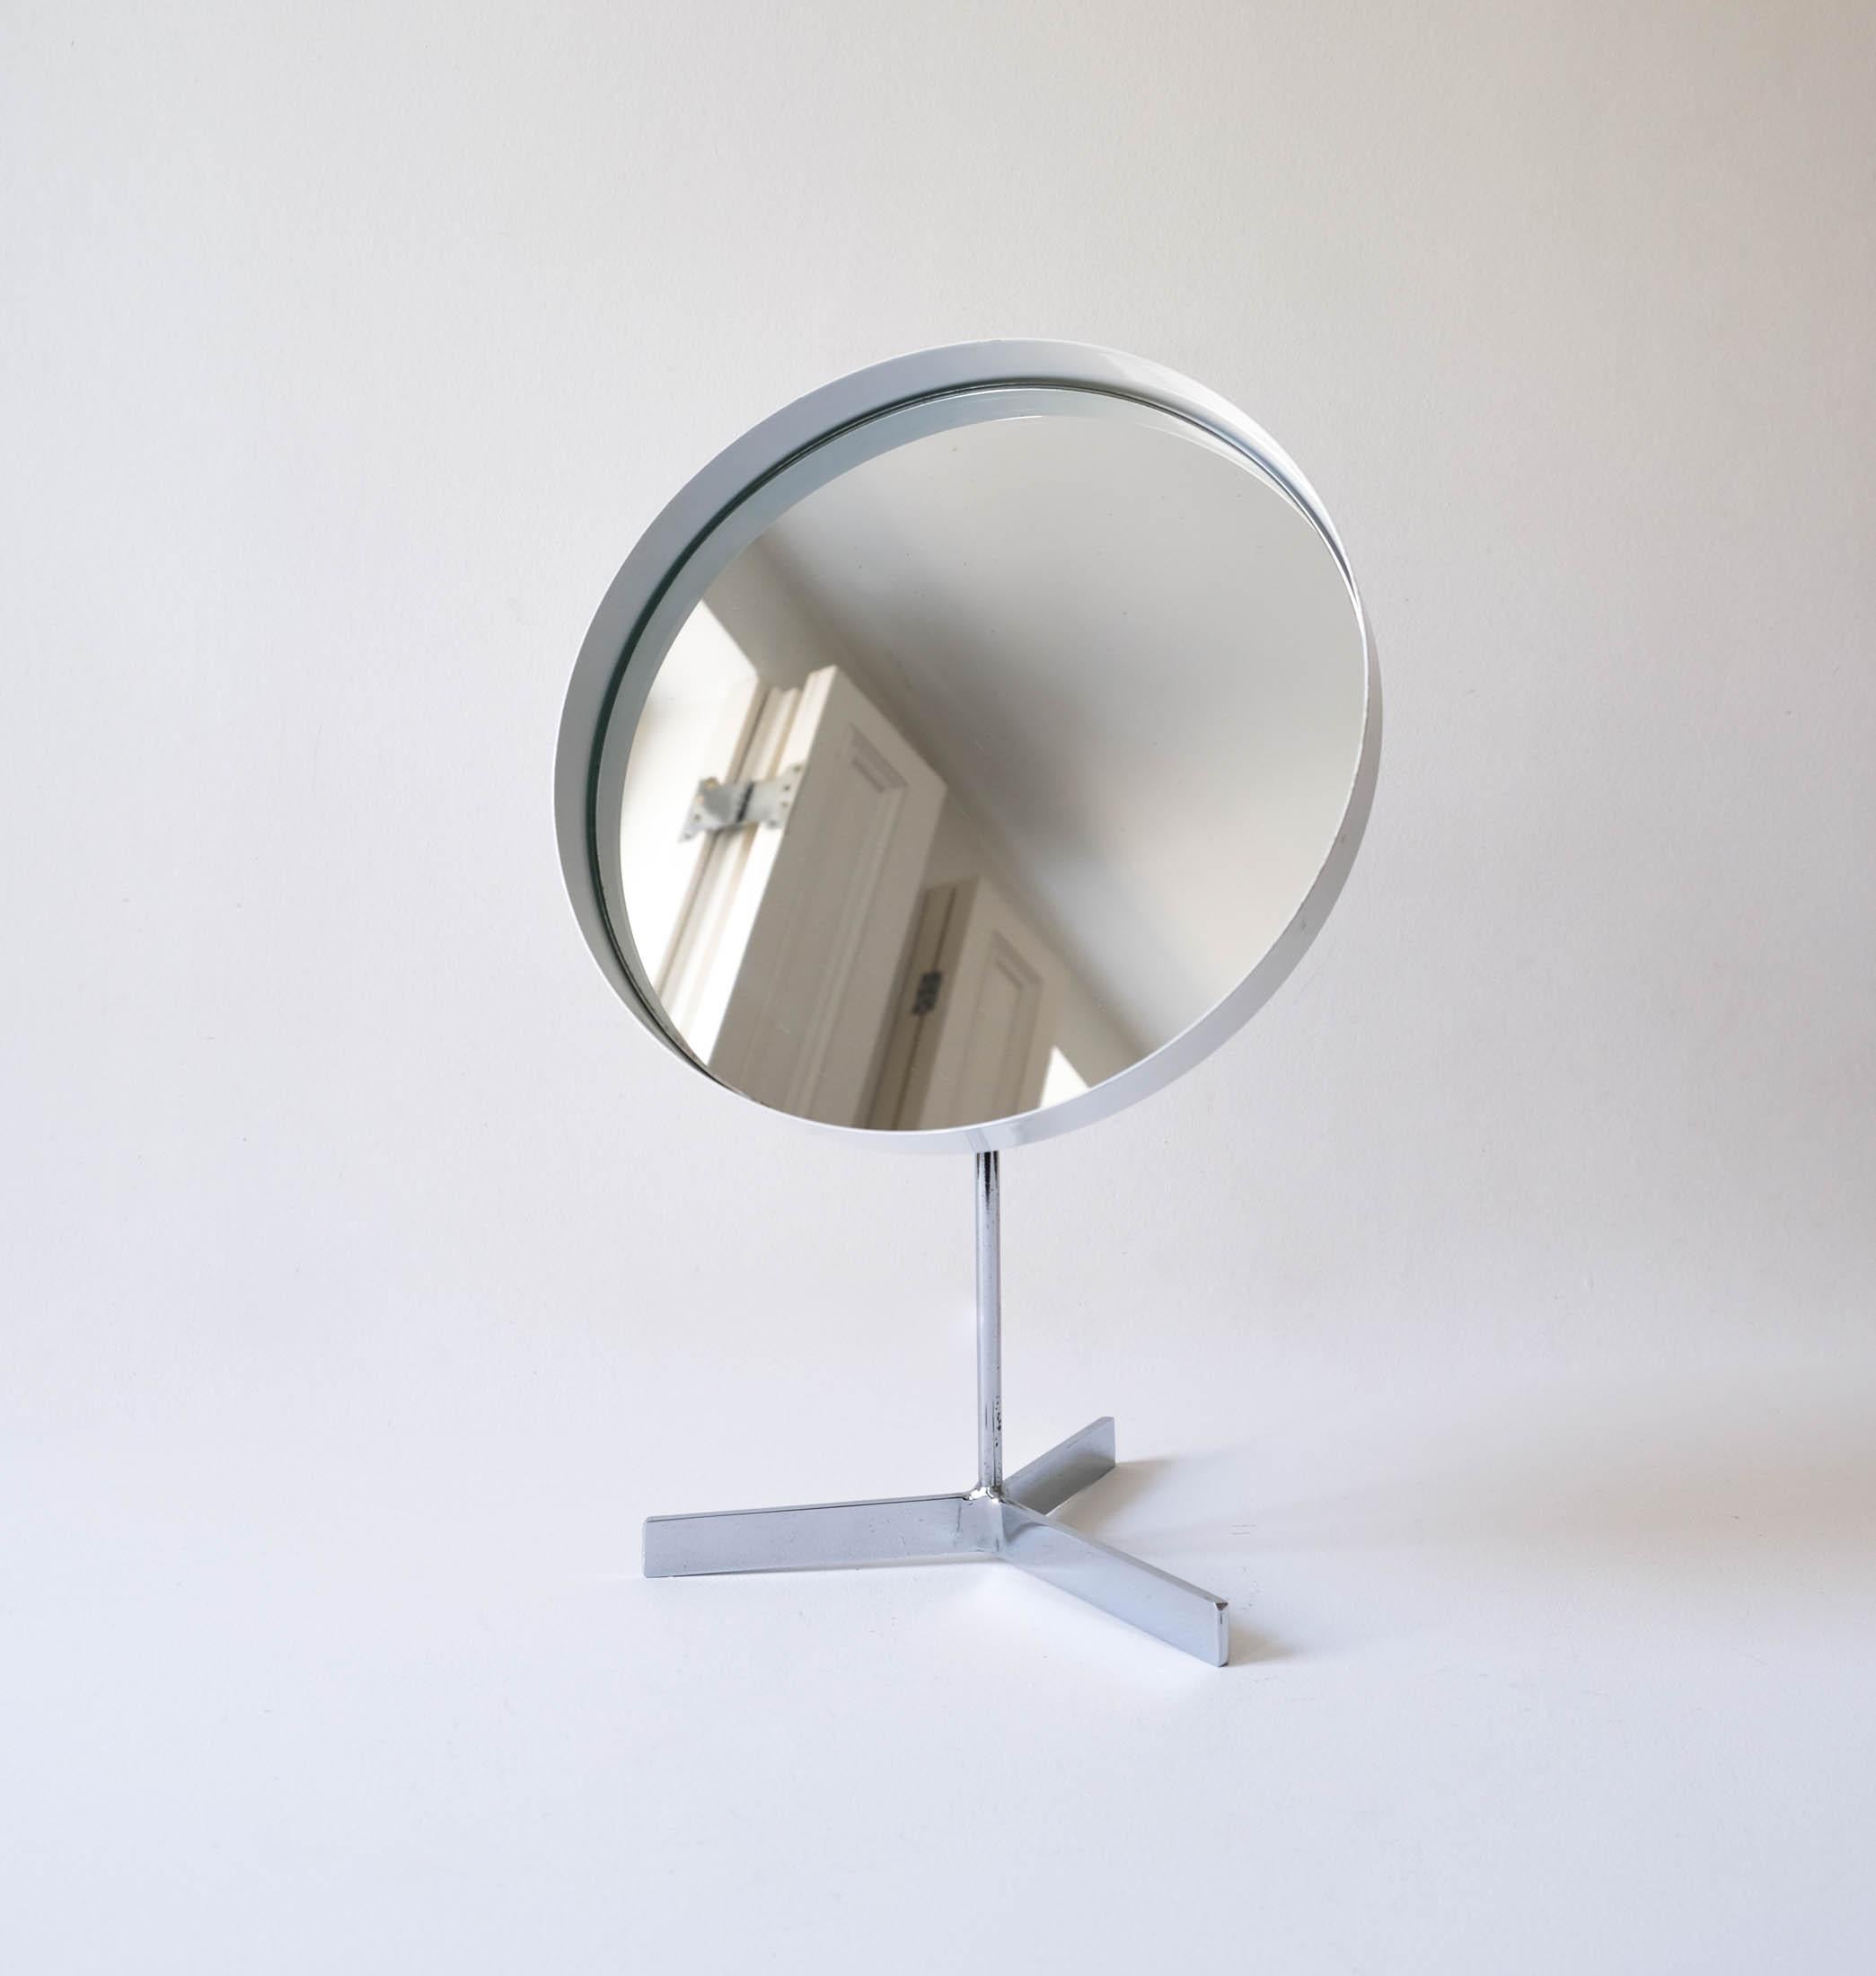 British Mid-Century White Vanity Table Mirror by Durlston Designs, c.1960s